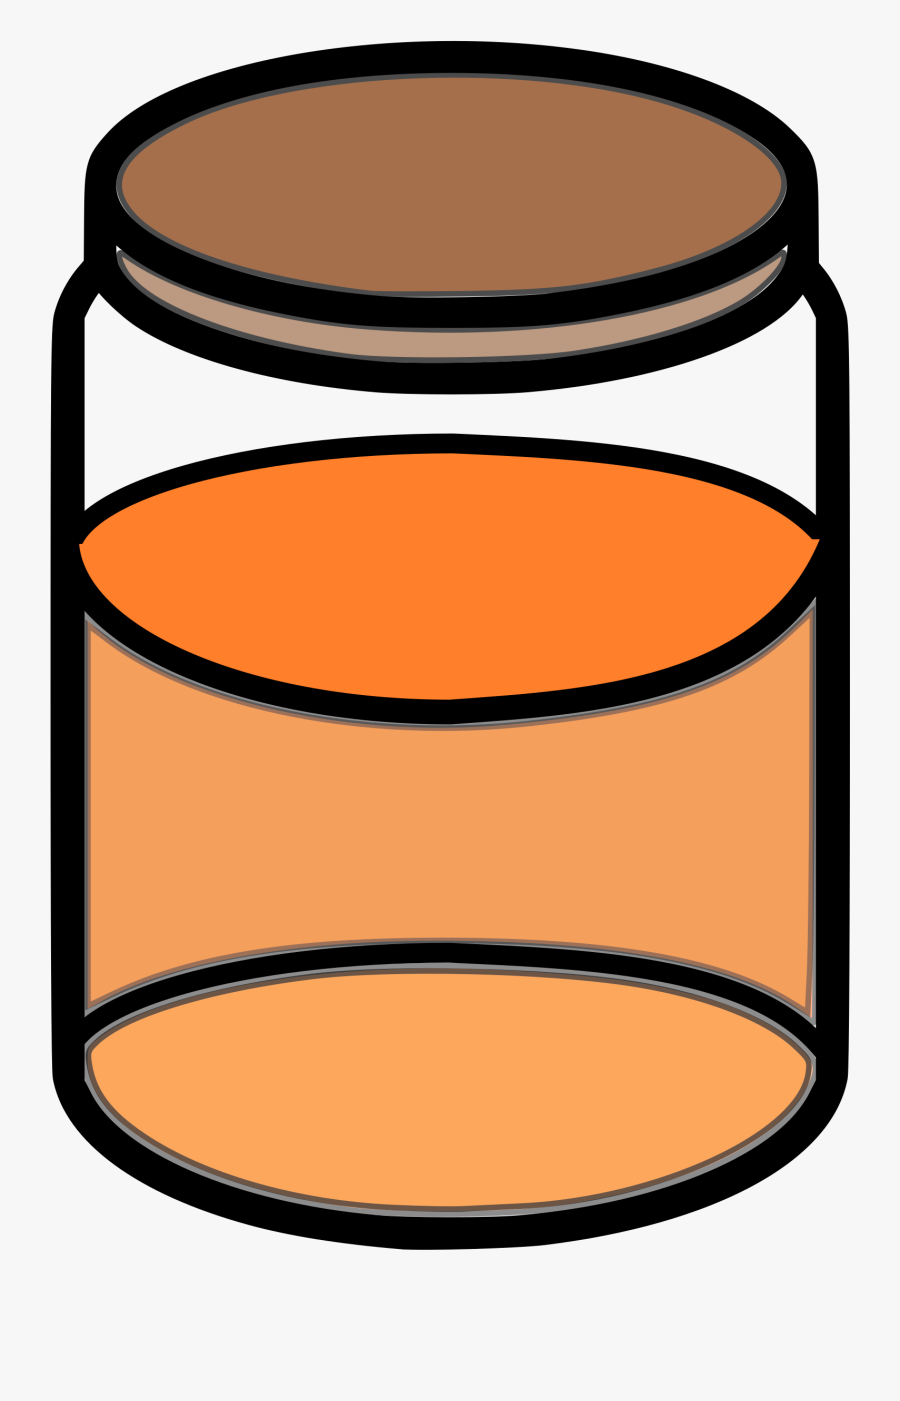 Honey Jar Clipart Honey Jar - Jar With Liquid Clipart, Transparent Clipart